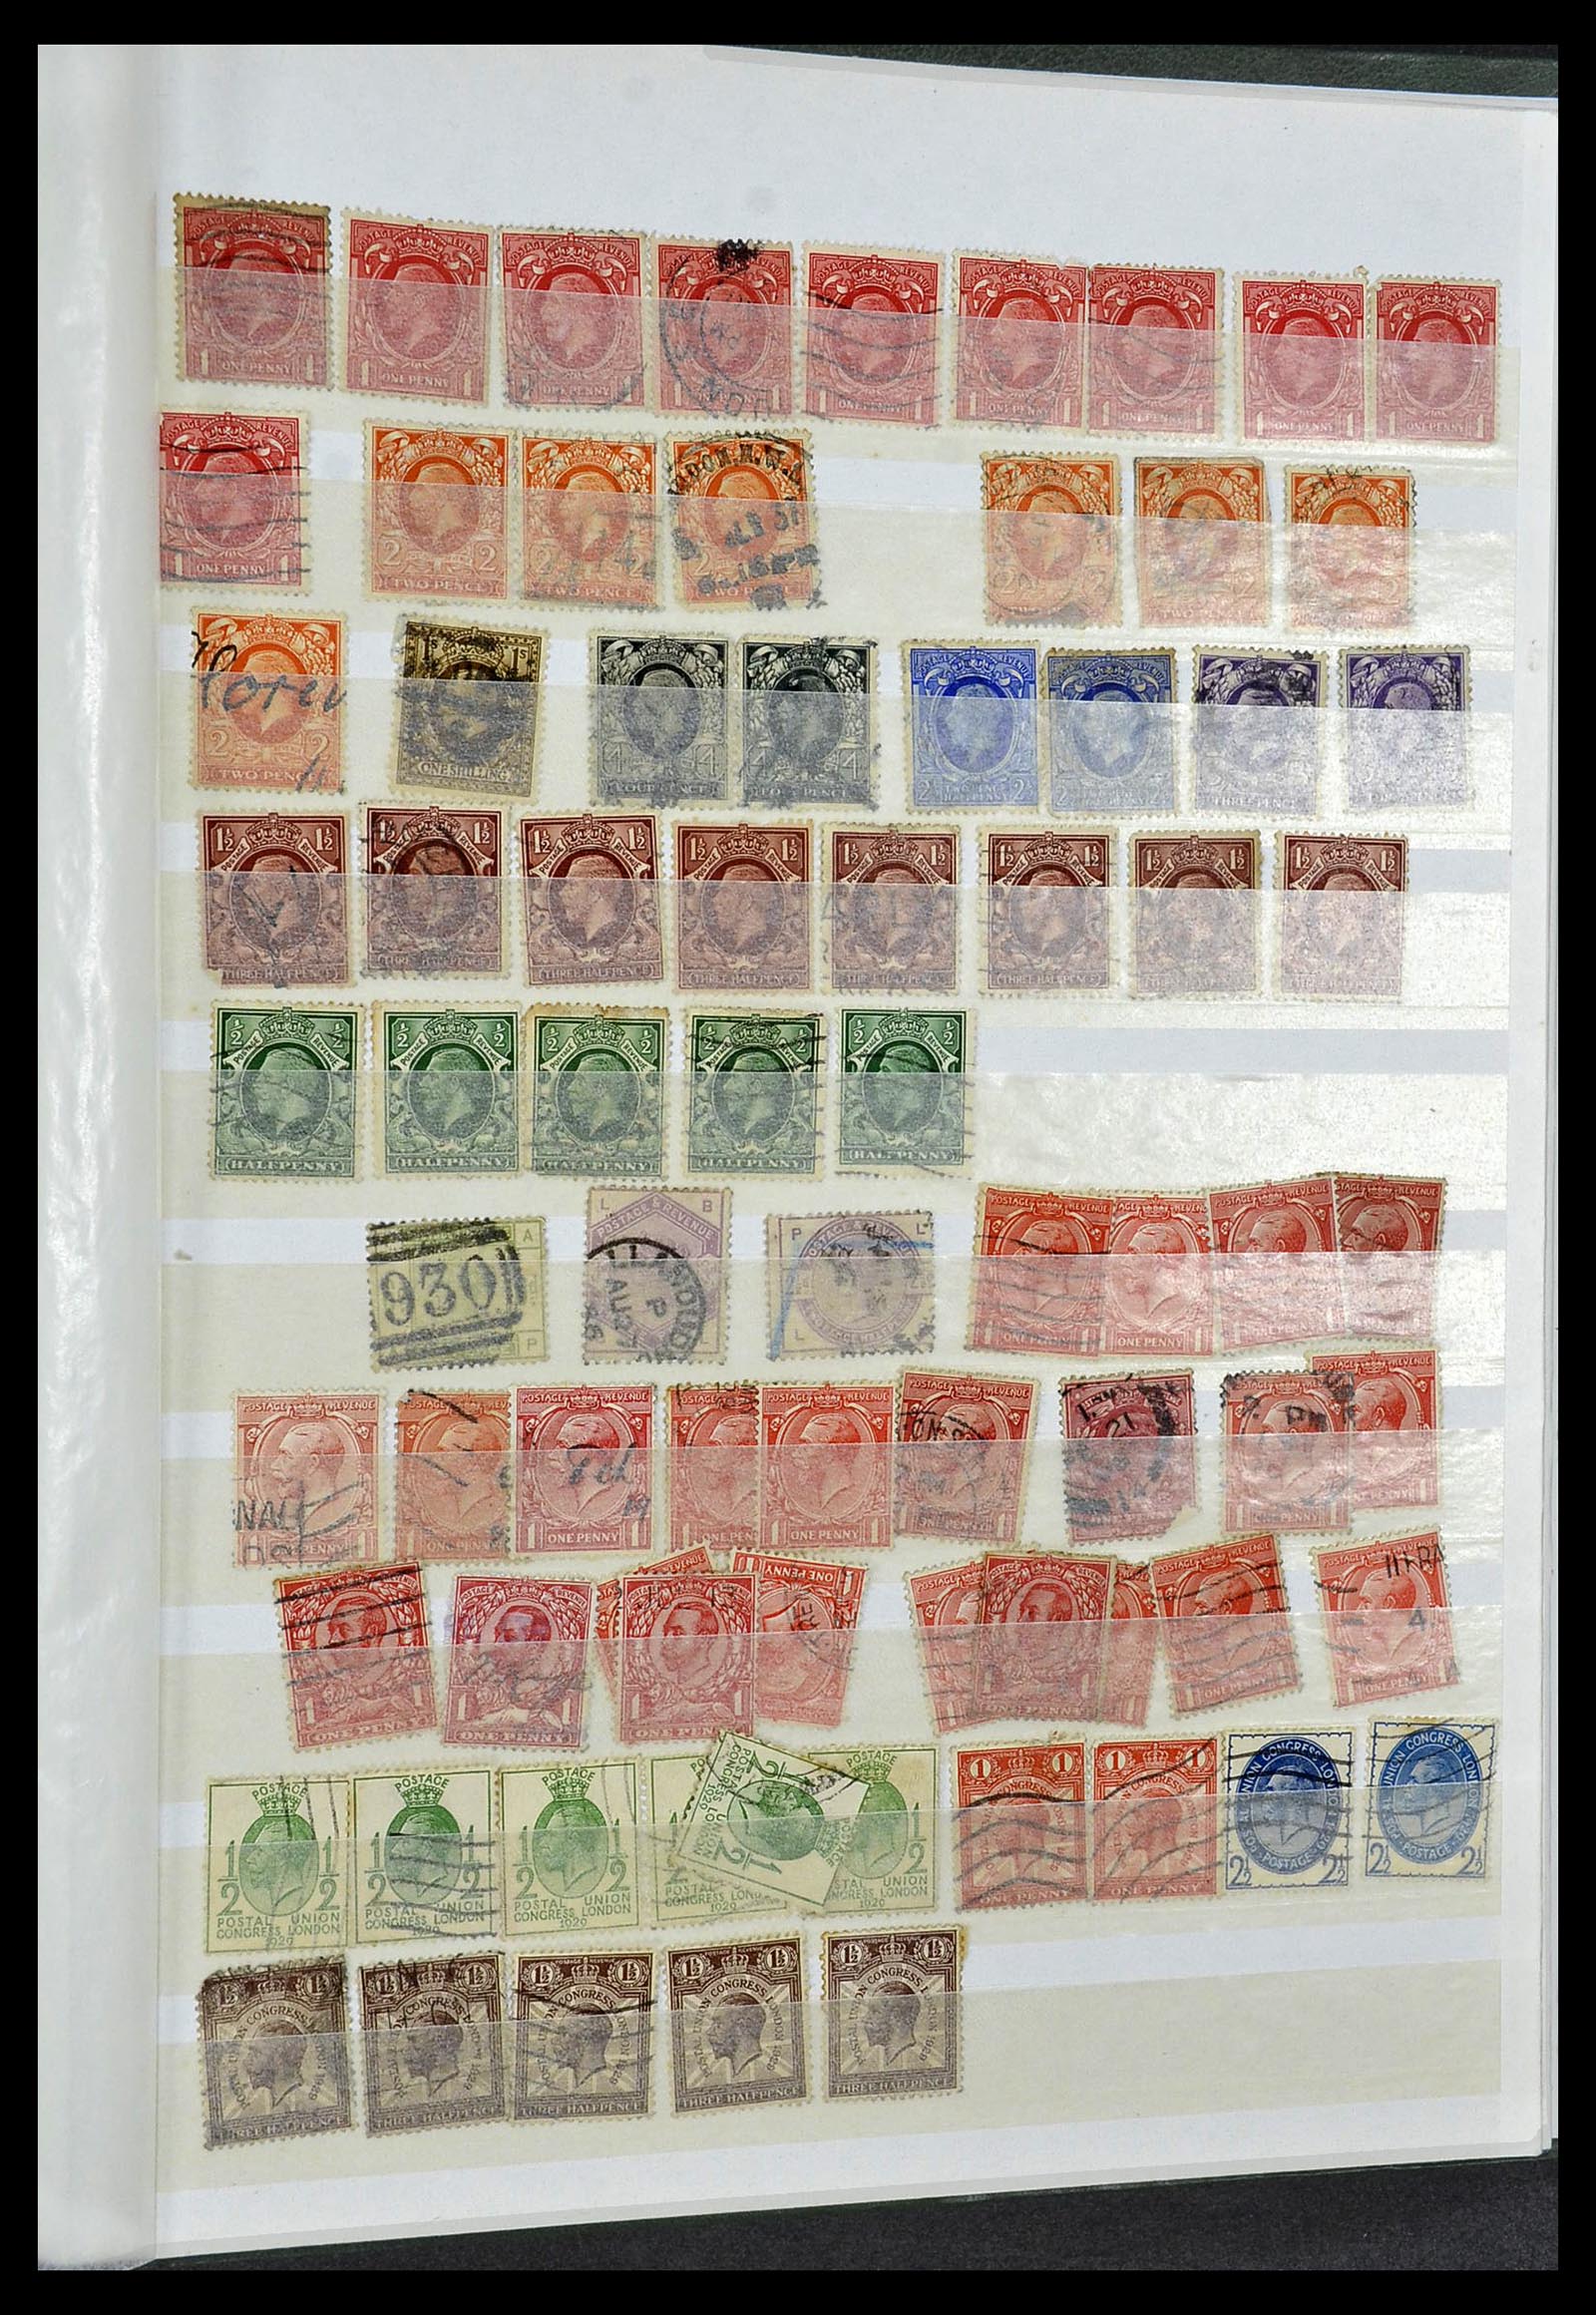 34368 124 - Postzegelverzameling 34368 Engeland uitzoekpartij 1858-1990.